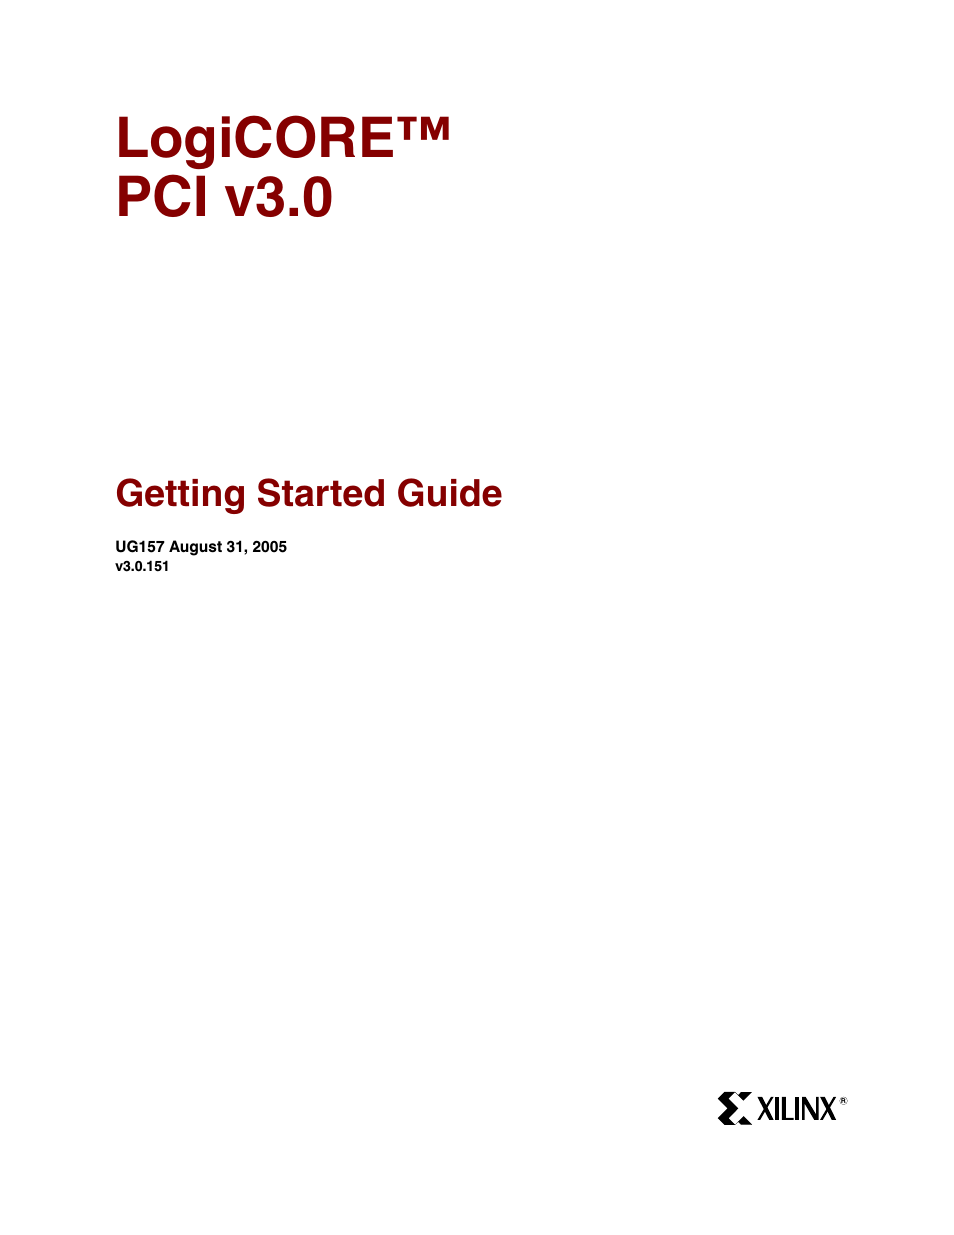 LogiCore PCI v3.0